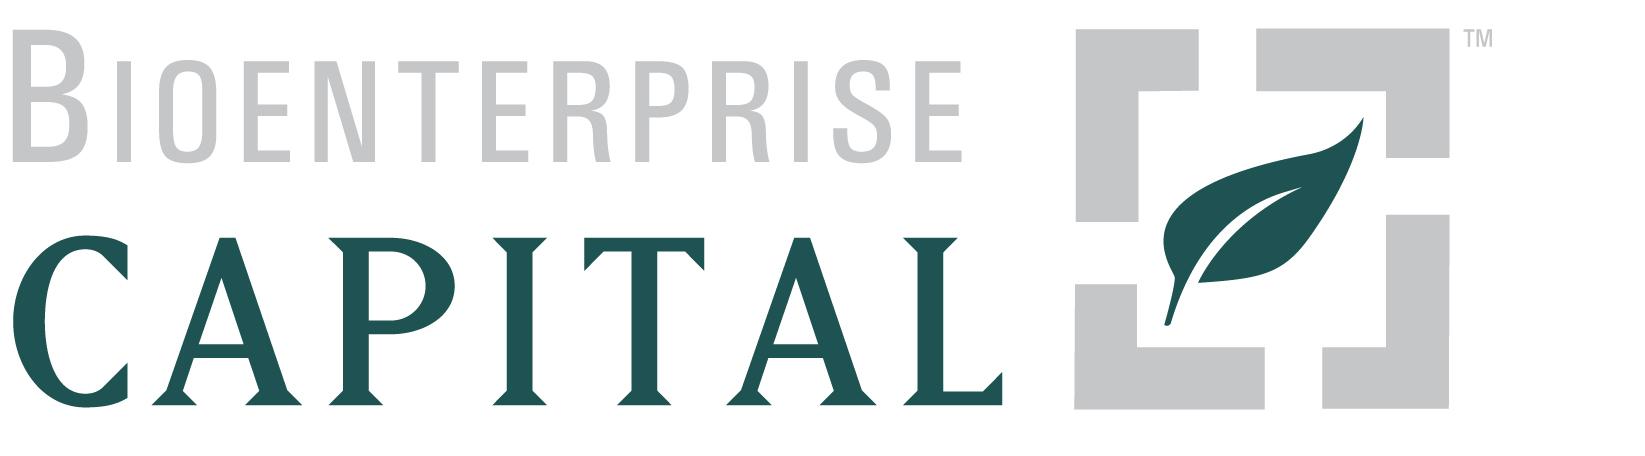 Bioenterprise Capital Logo